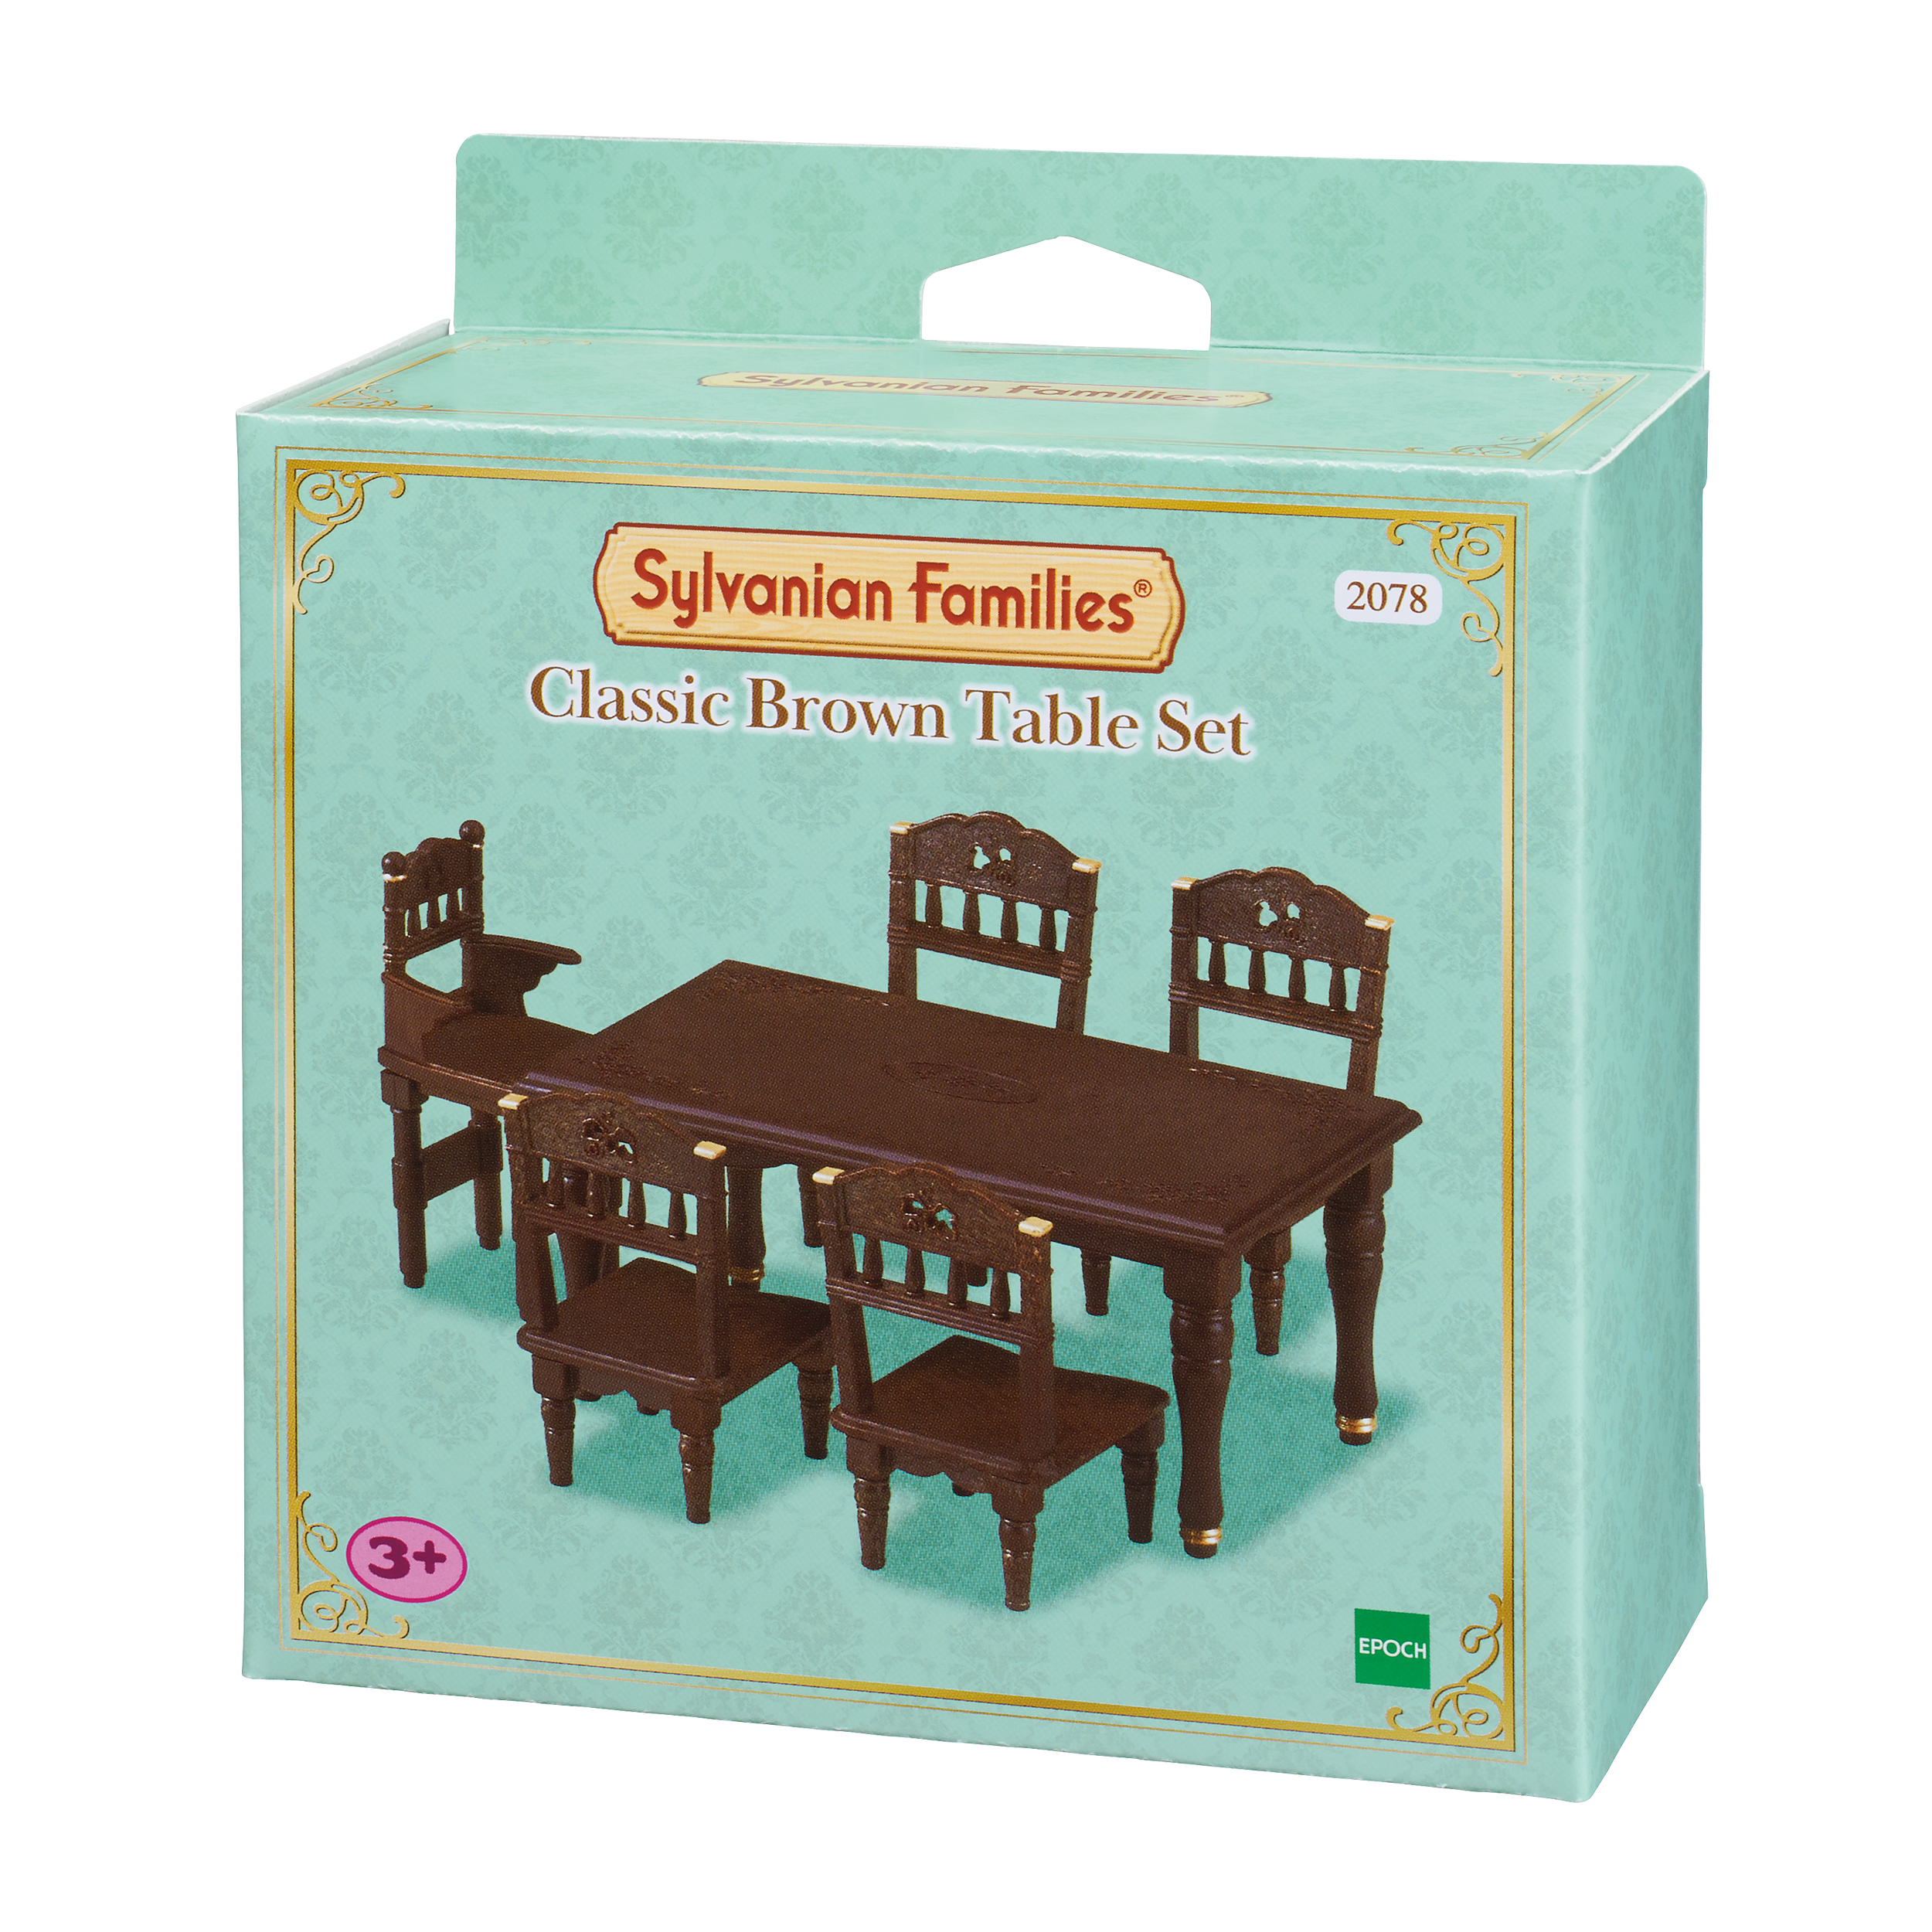 Игровой набор Sylvanian Families Sylvanian Families 2078 6 sylvanian families классический коричневый письменный стол